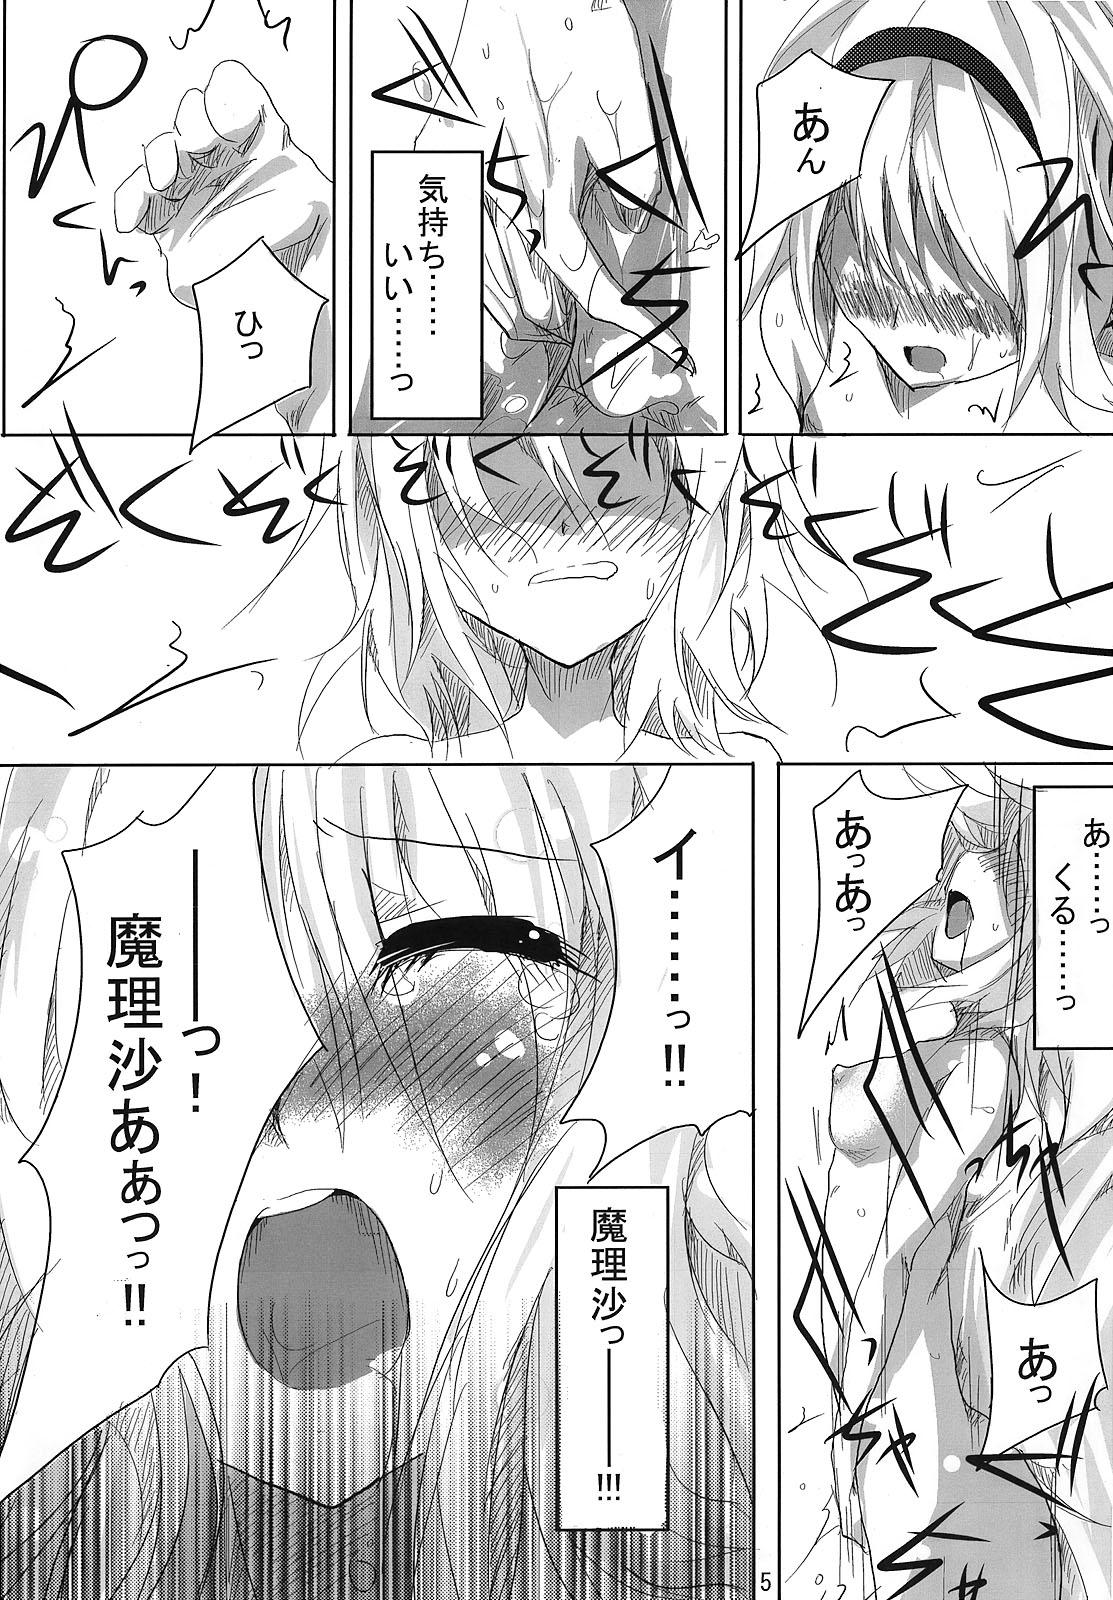 RAN × Yukari AND Alice × Marisa 3